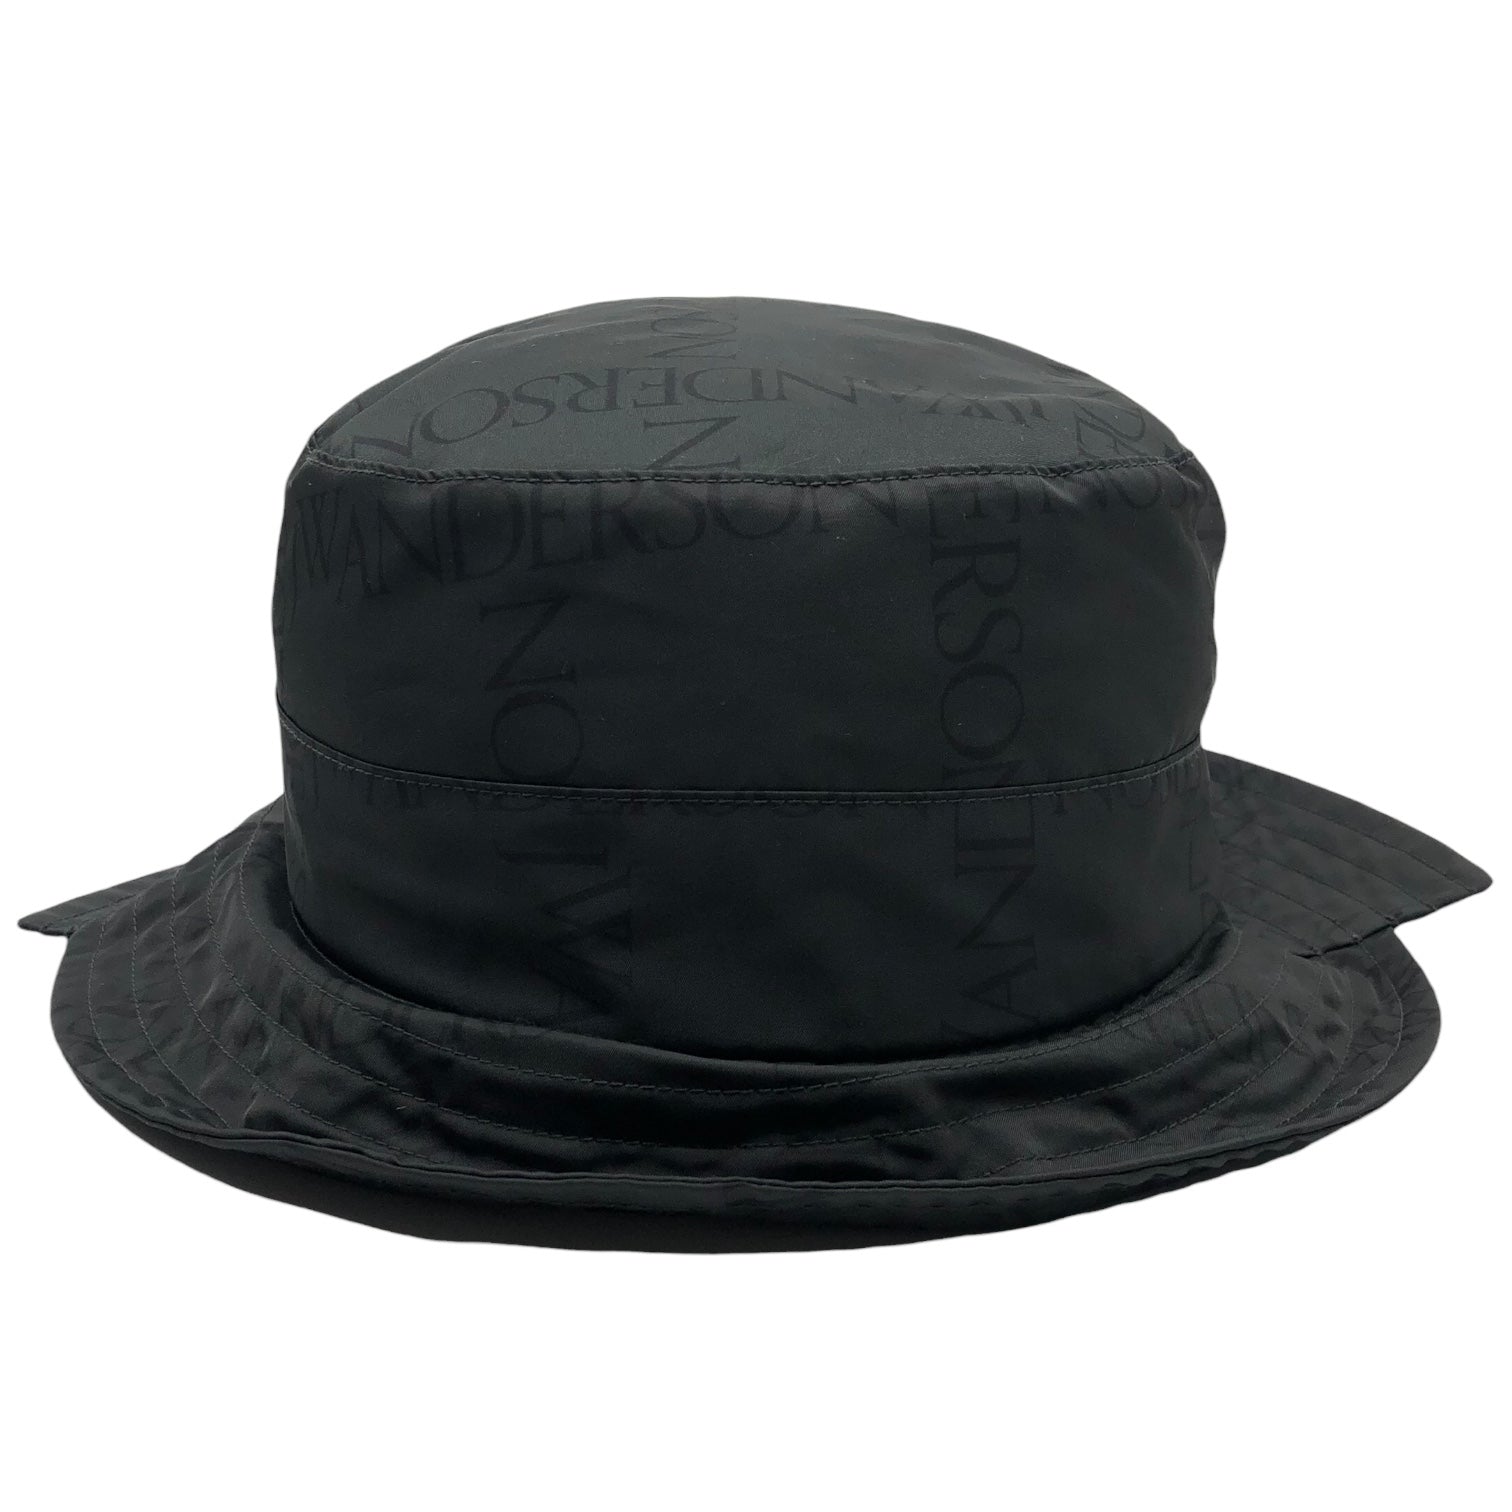 J.W.ANDERSON(ジェイダブリューアンダーソン) logo patch safari hat ロゴパッチ サファリ ハット N1 7GW 58 ブラック バケット